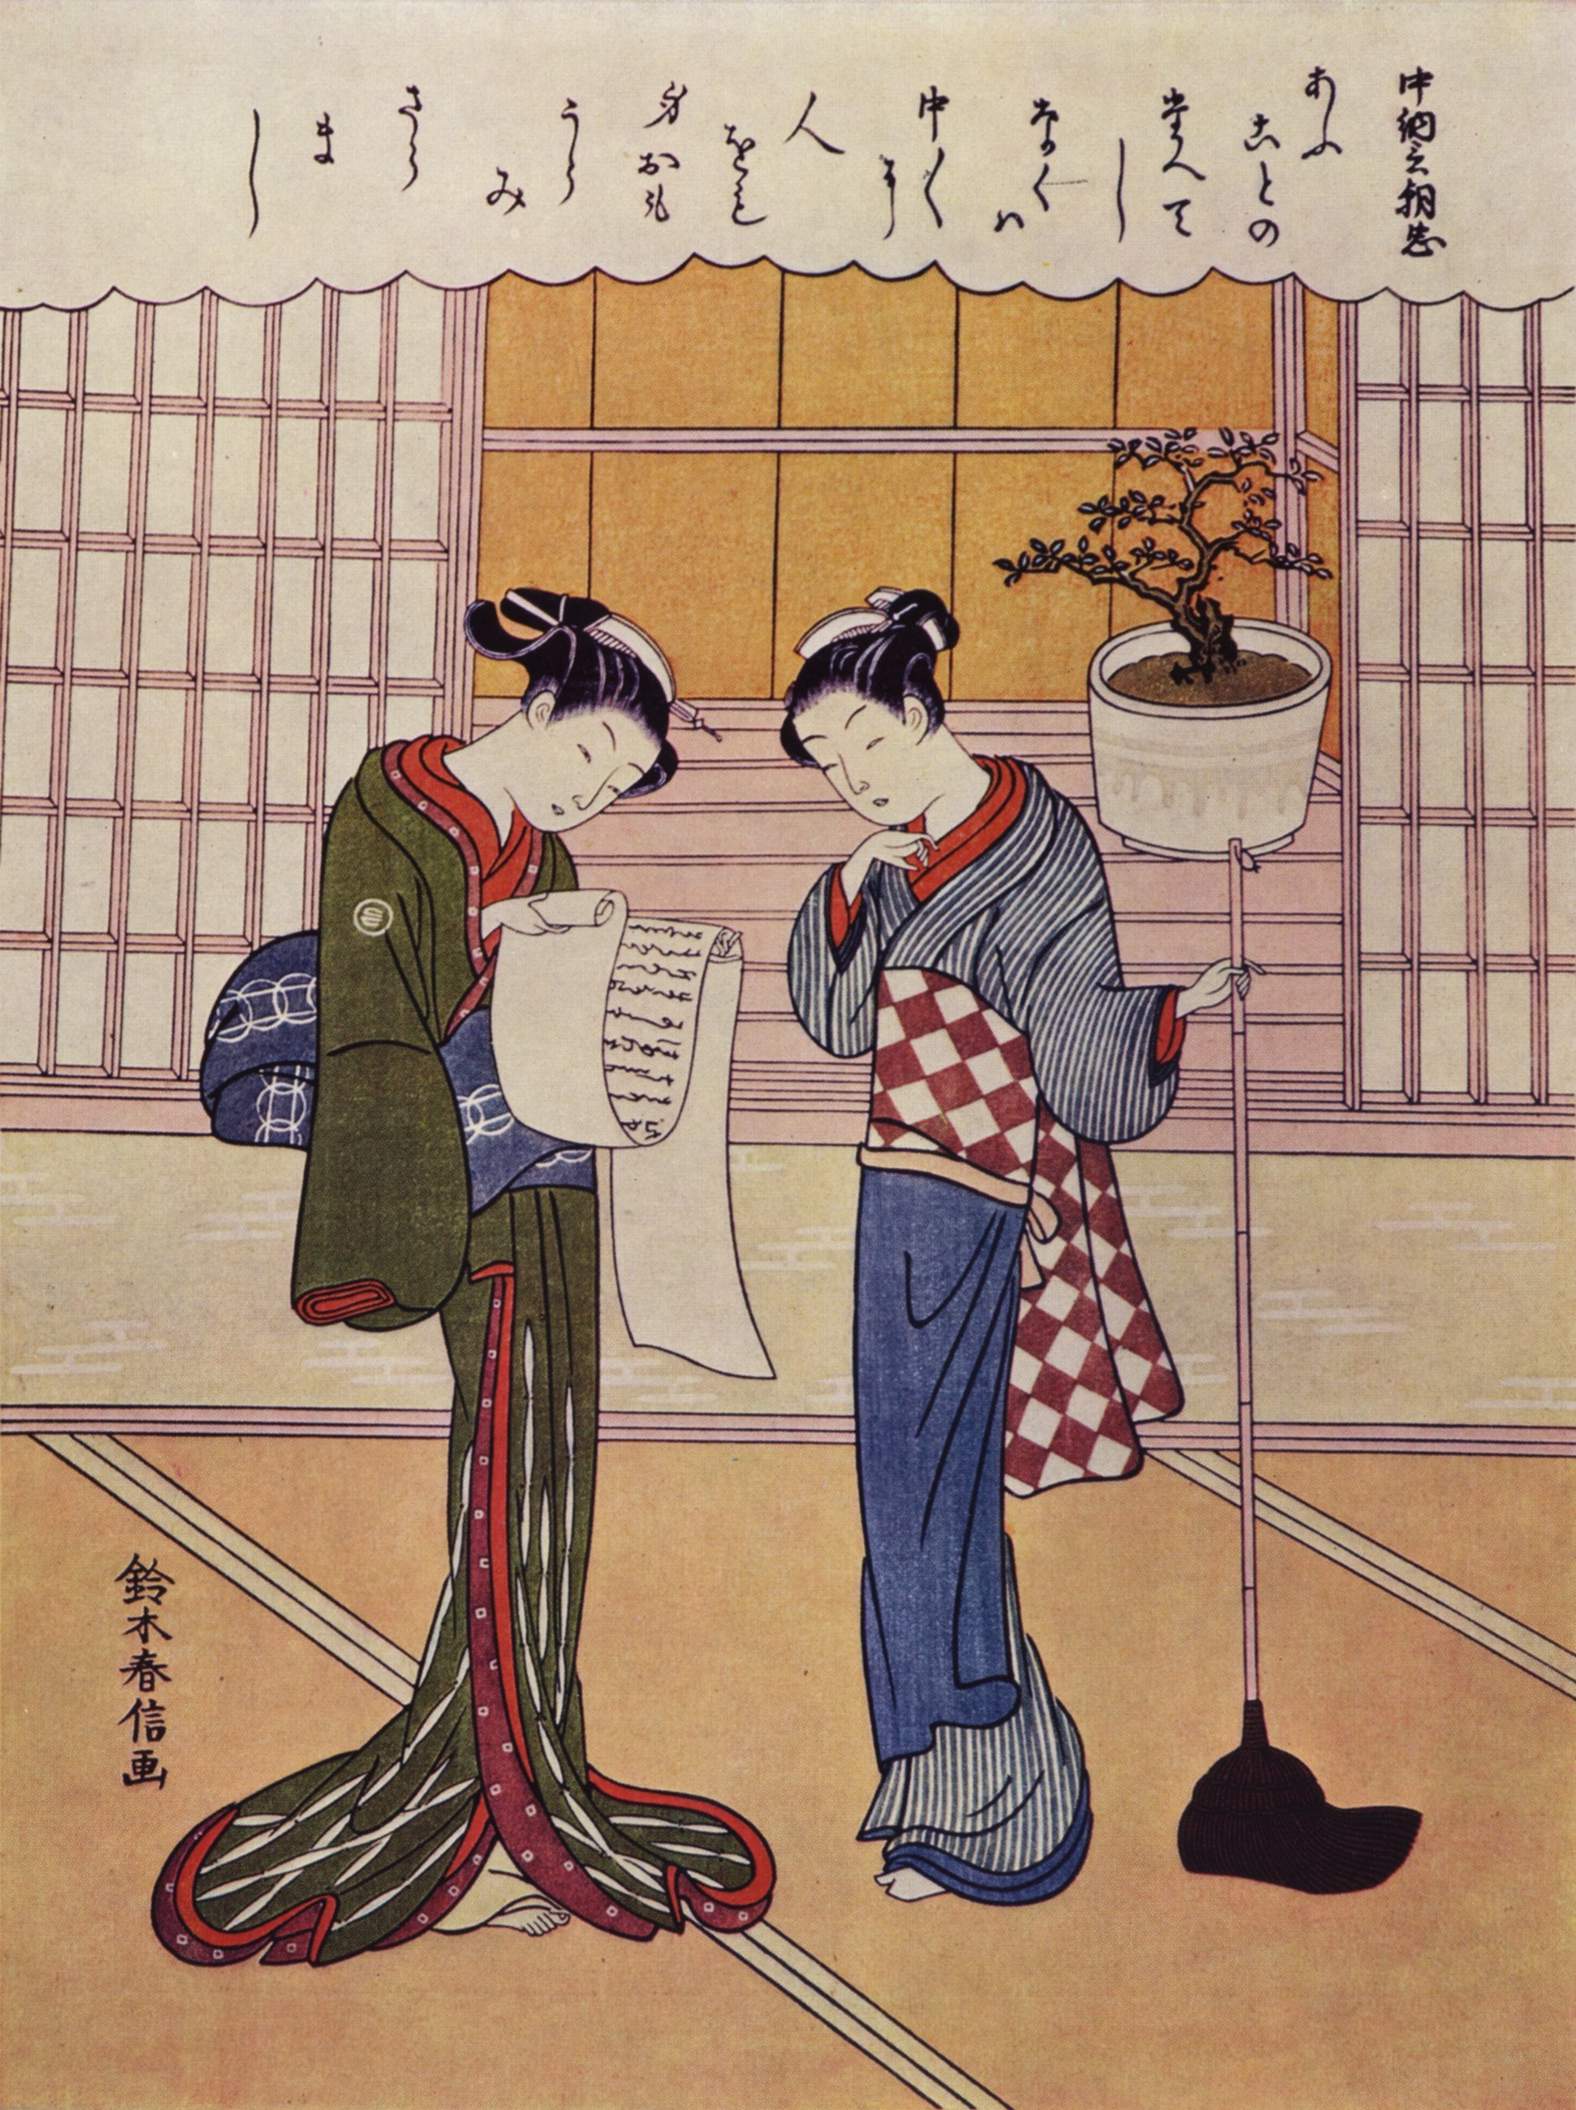 门廊前的两个女孩 by 铃木 晴信 - c. 1750 - 28.8 × 21.8 cm 贝克特勒现代艺术博物馆